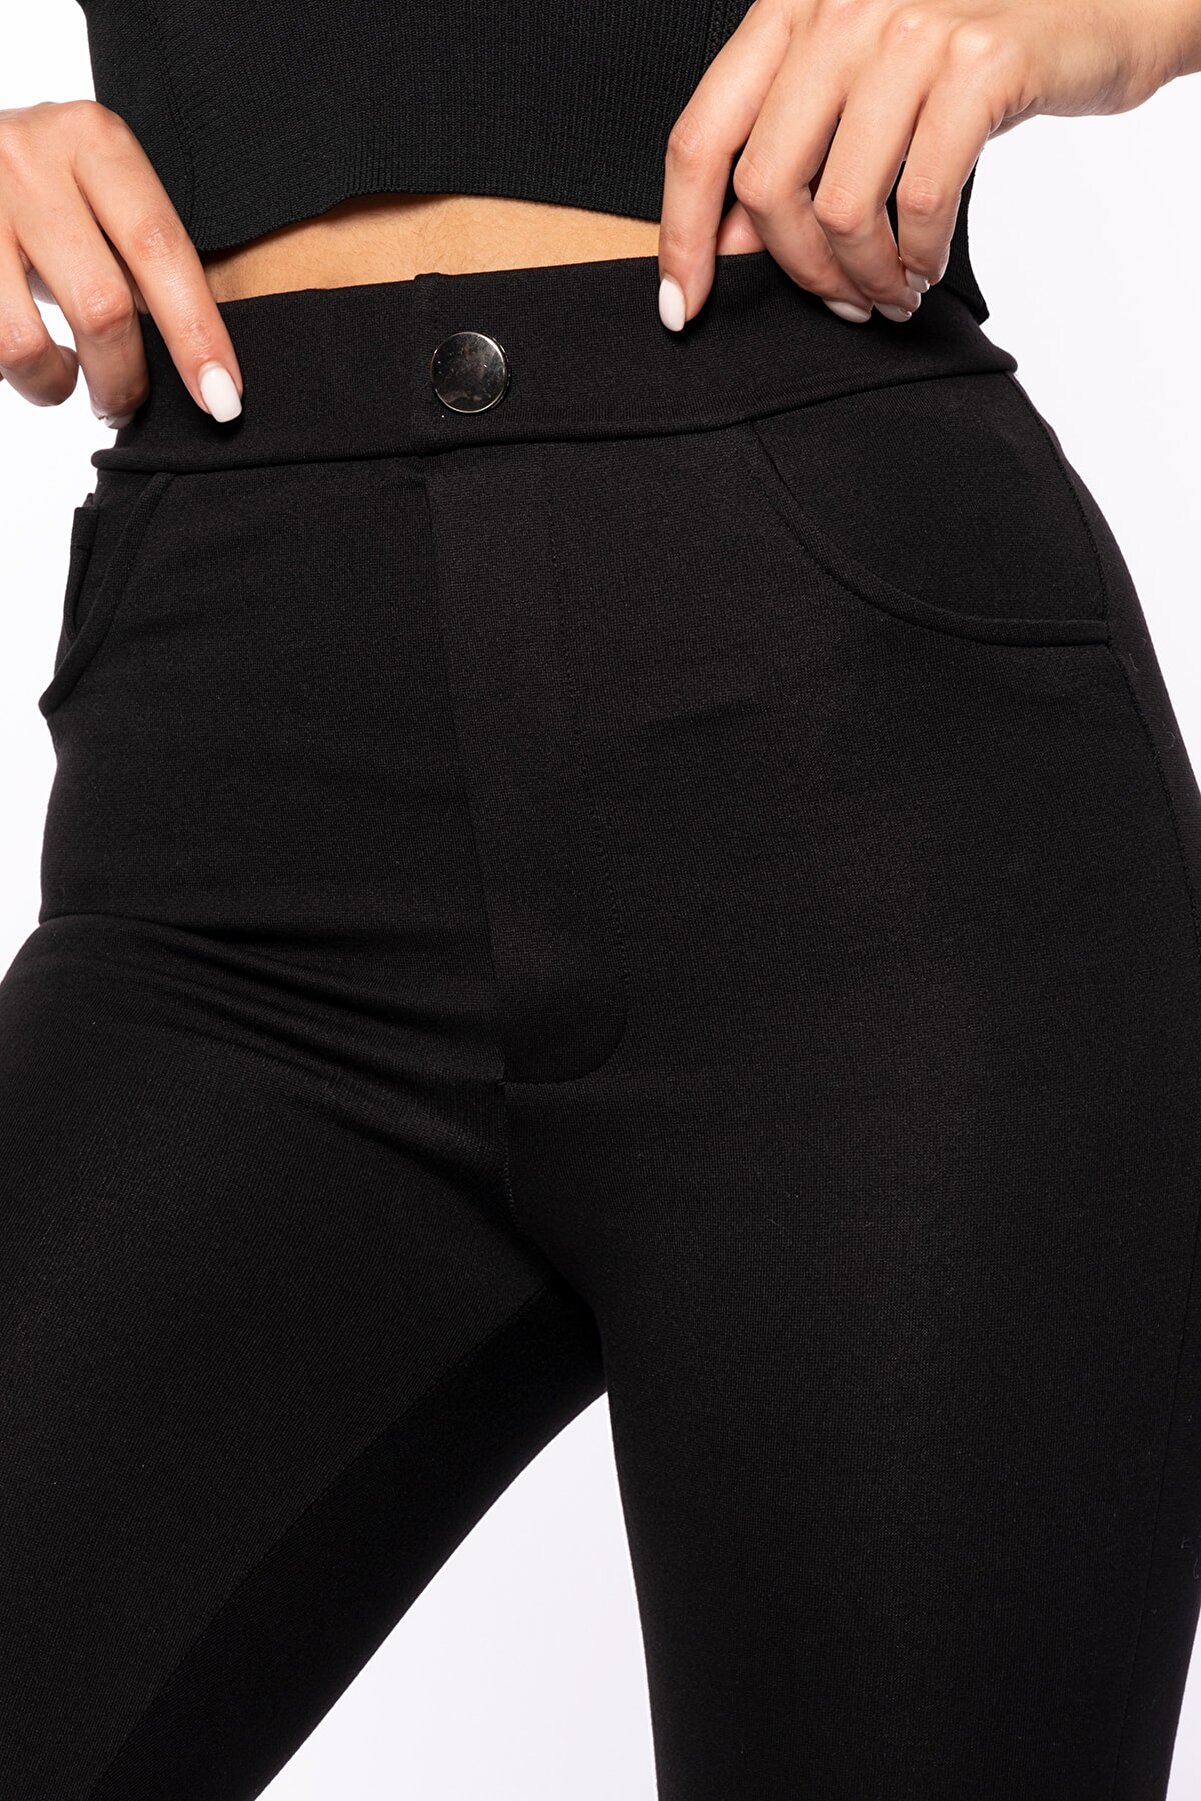 Grenj Fashion Siyah Yüksek Bel Düğme Ve Cep Detaylı Toparlayıcı Pantolon Tayt